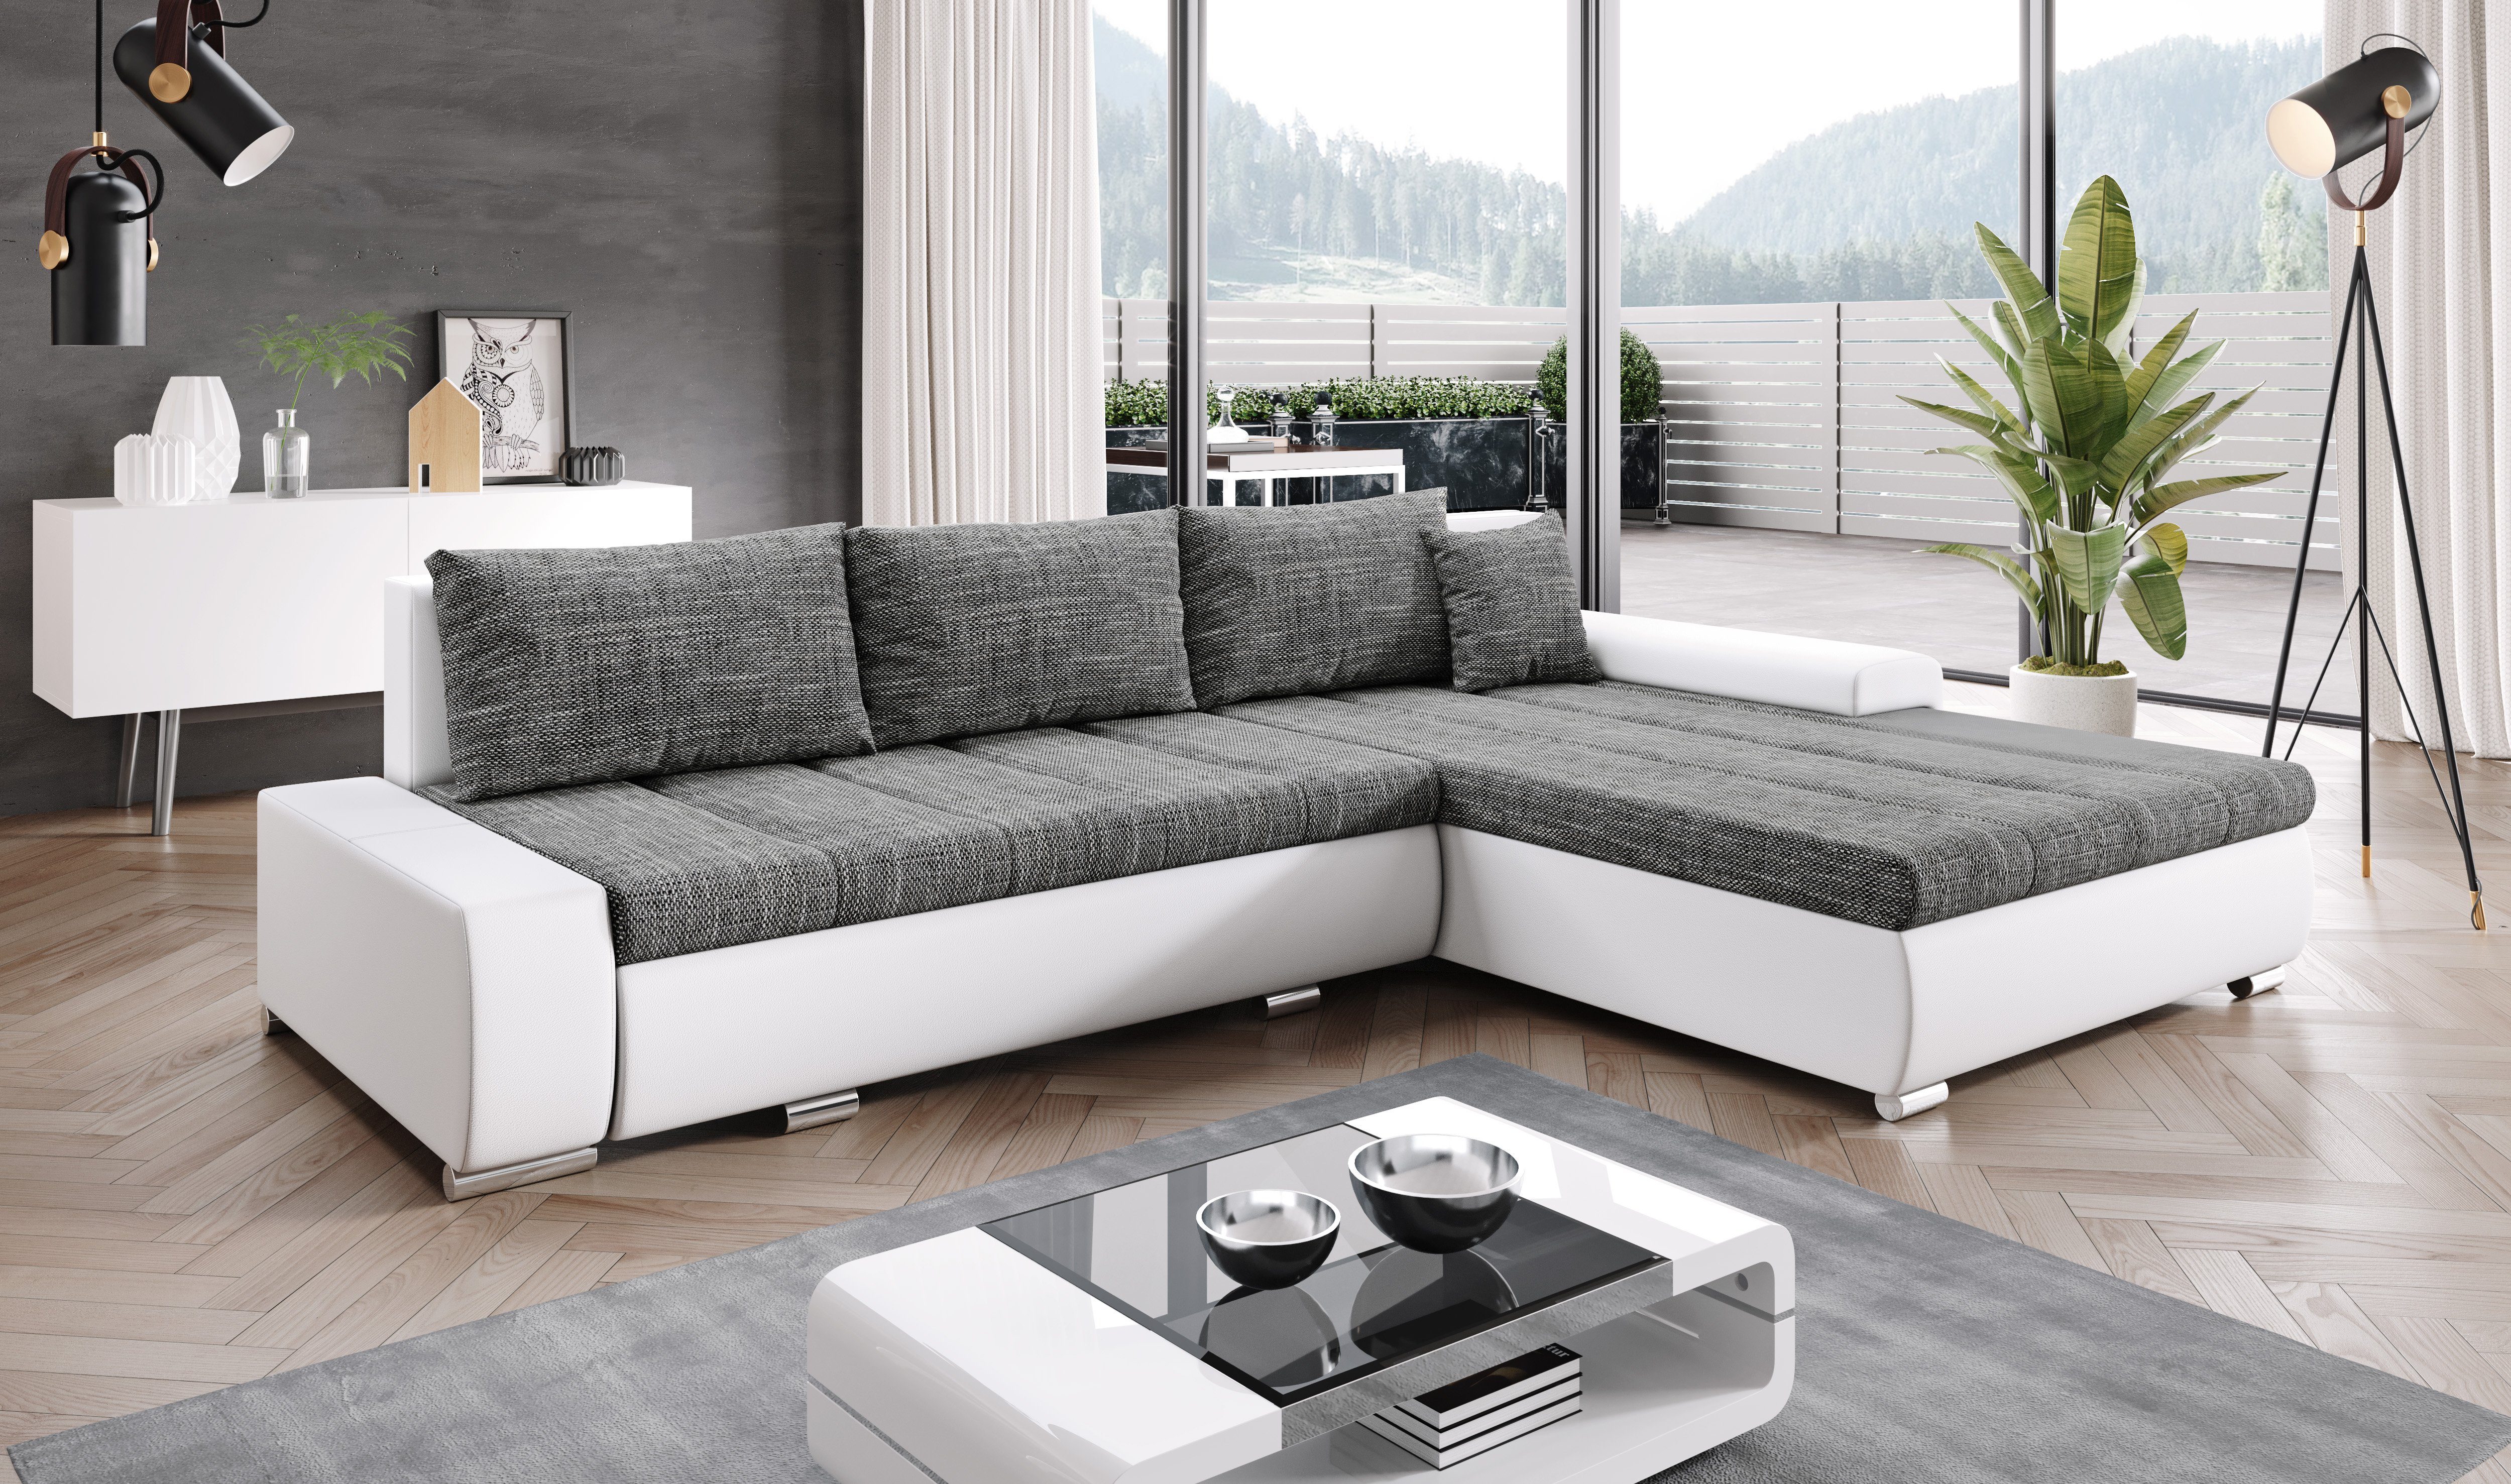 Furnix Ecksofa TOMMASO Sofa Schlaffunktion mit Bettkasten Kissen Couch, B297 x H85 x T210 cm, hochwertig, Made in EU Braun/Weiß Stoff/Kunstleder MA120 BE01